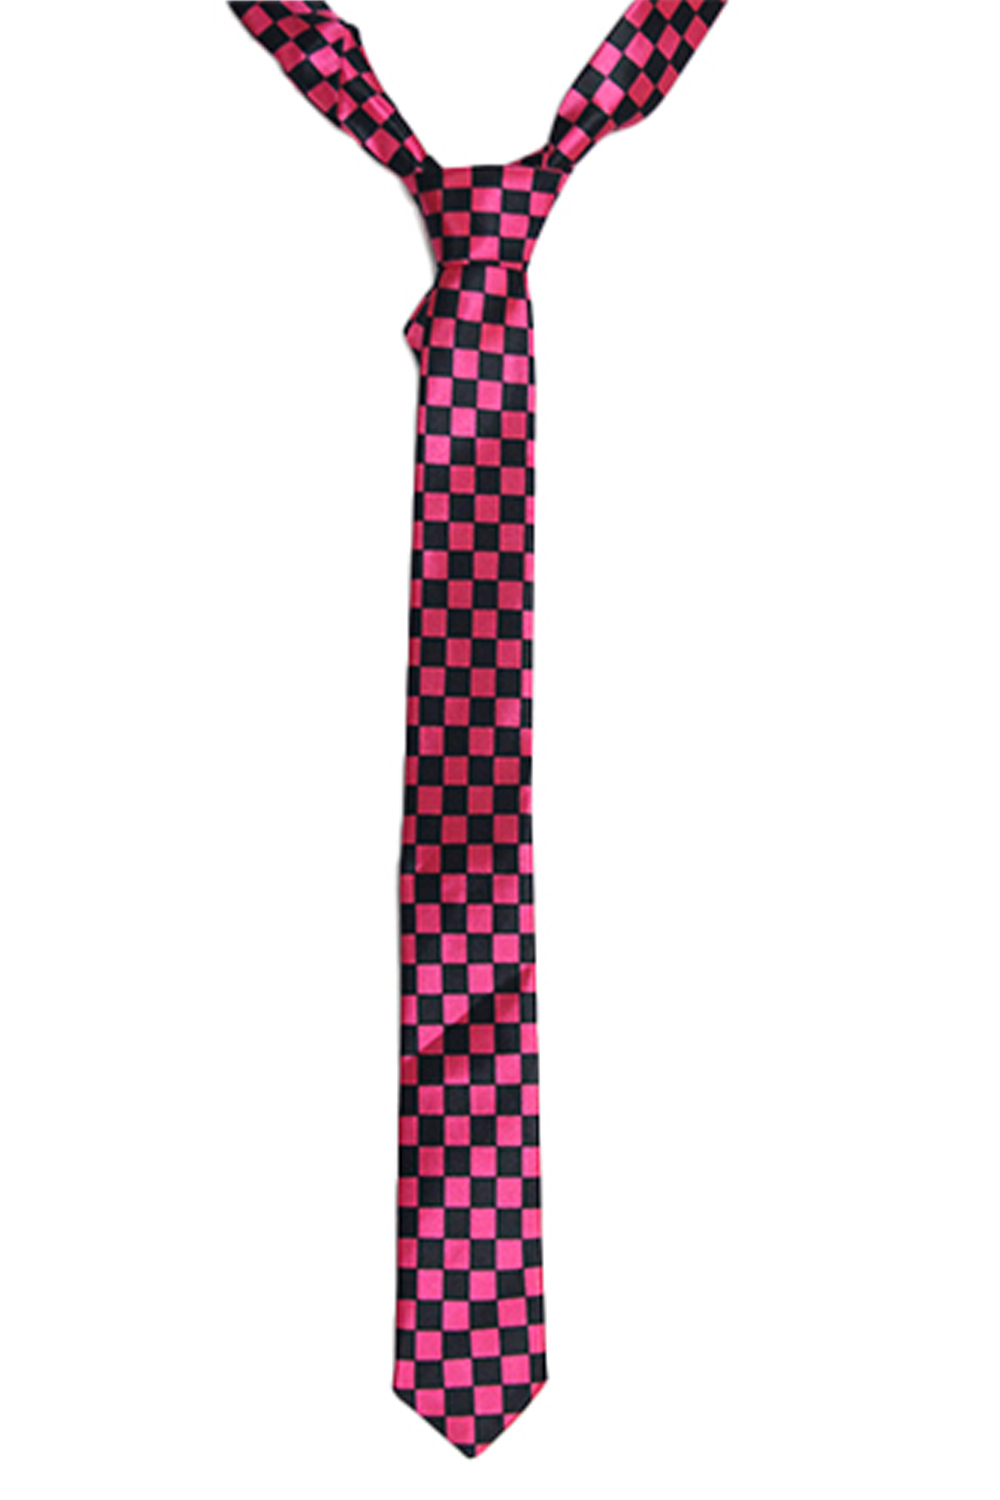 Black and Fuchsia Checkered Neck Tie